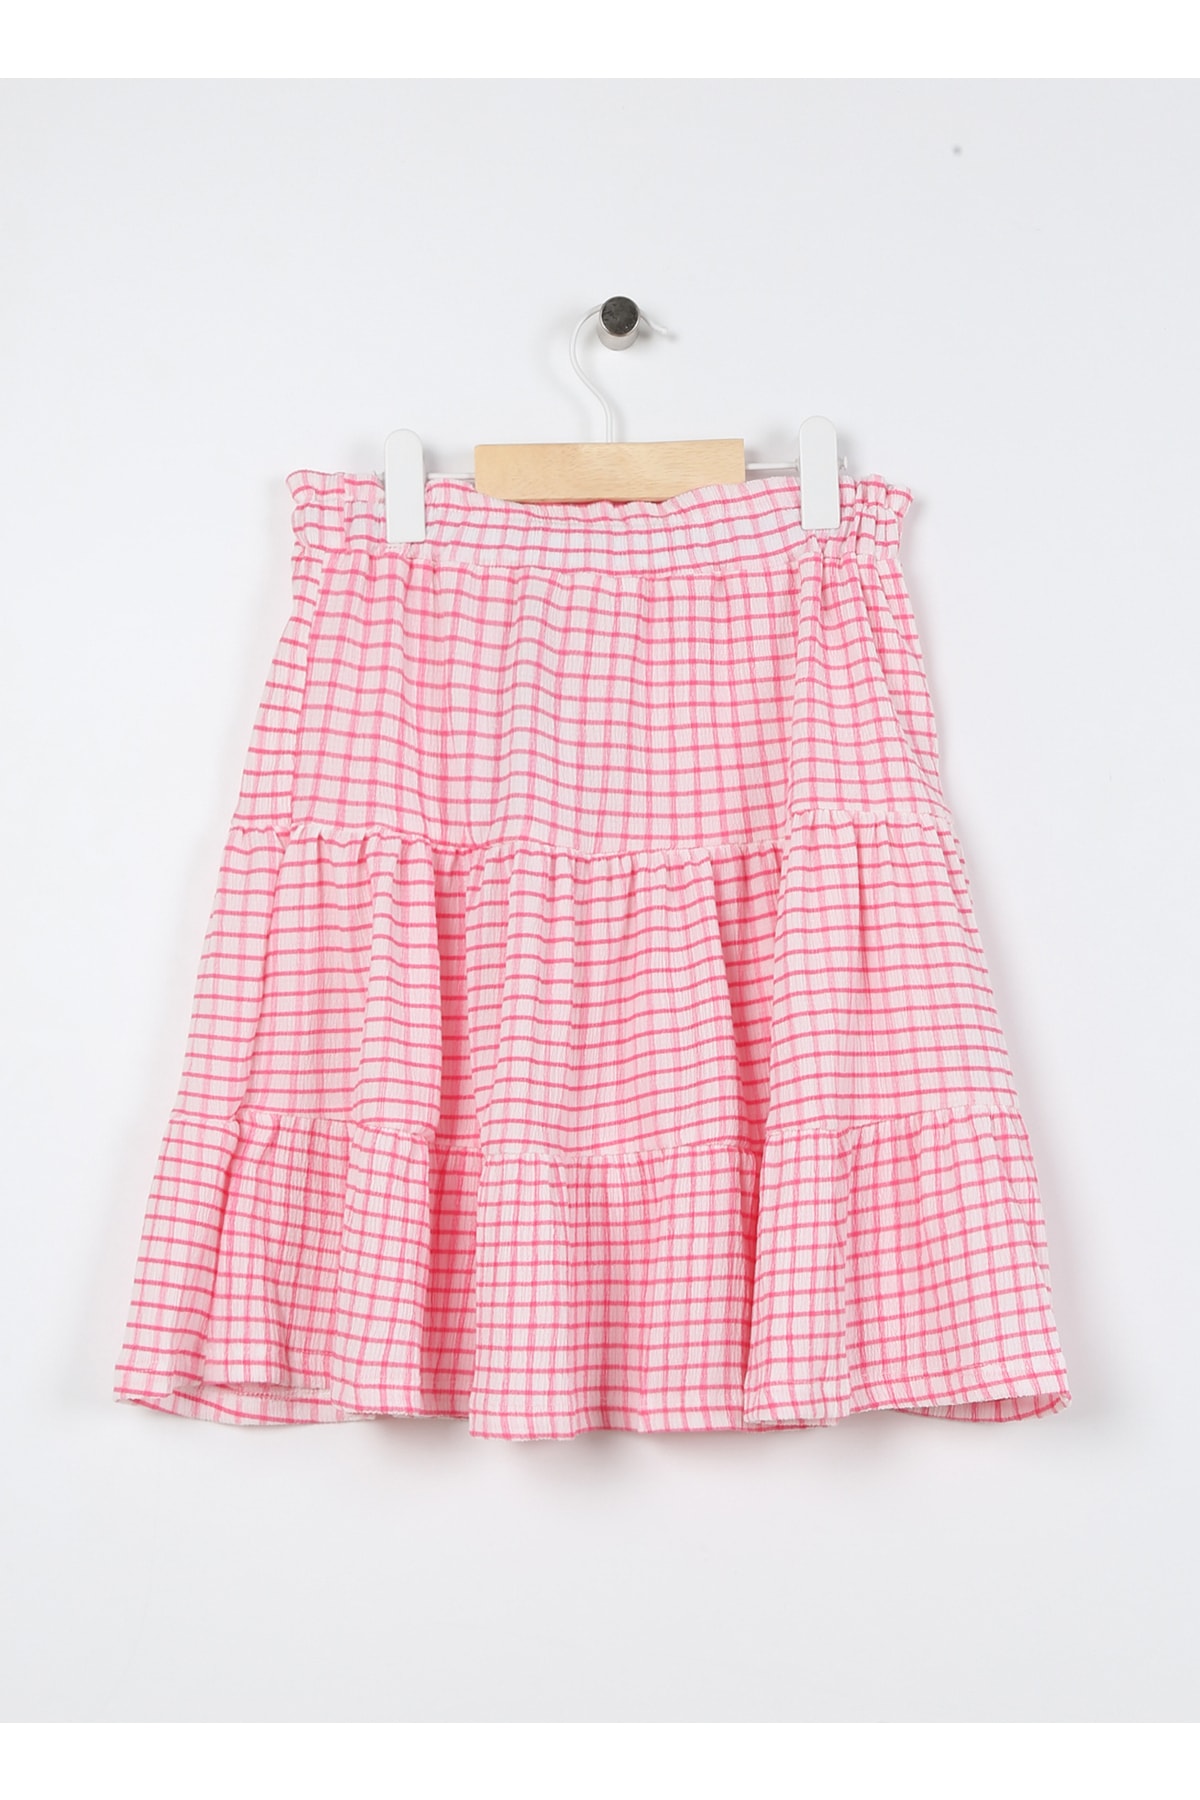 Koton Elastic Waist Normal Pink Gingham Short Girl's Skirt 3skg70009ak